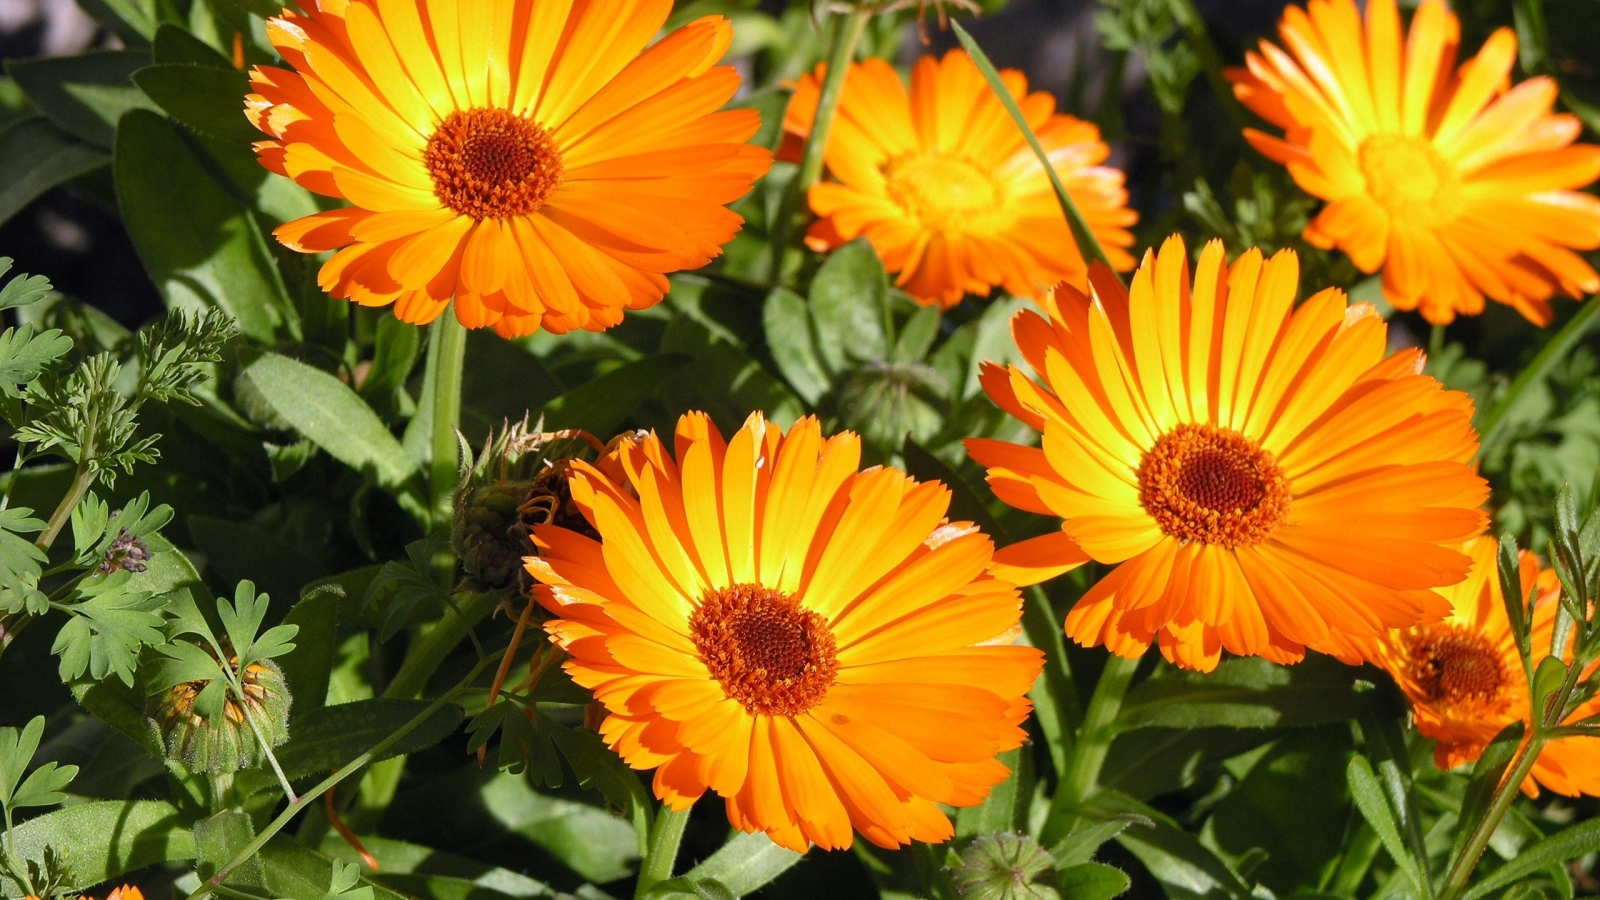 Sunbathing Flower for 1600 x 900 HDTV resolution